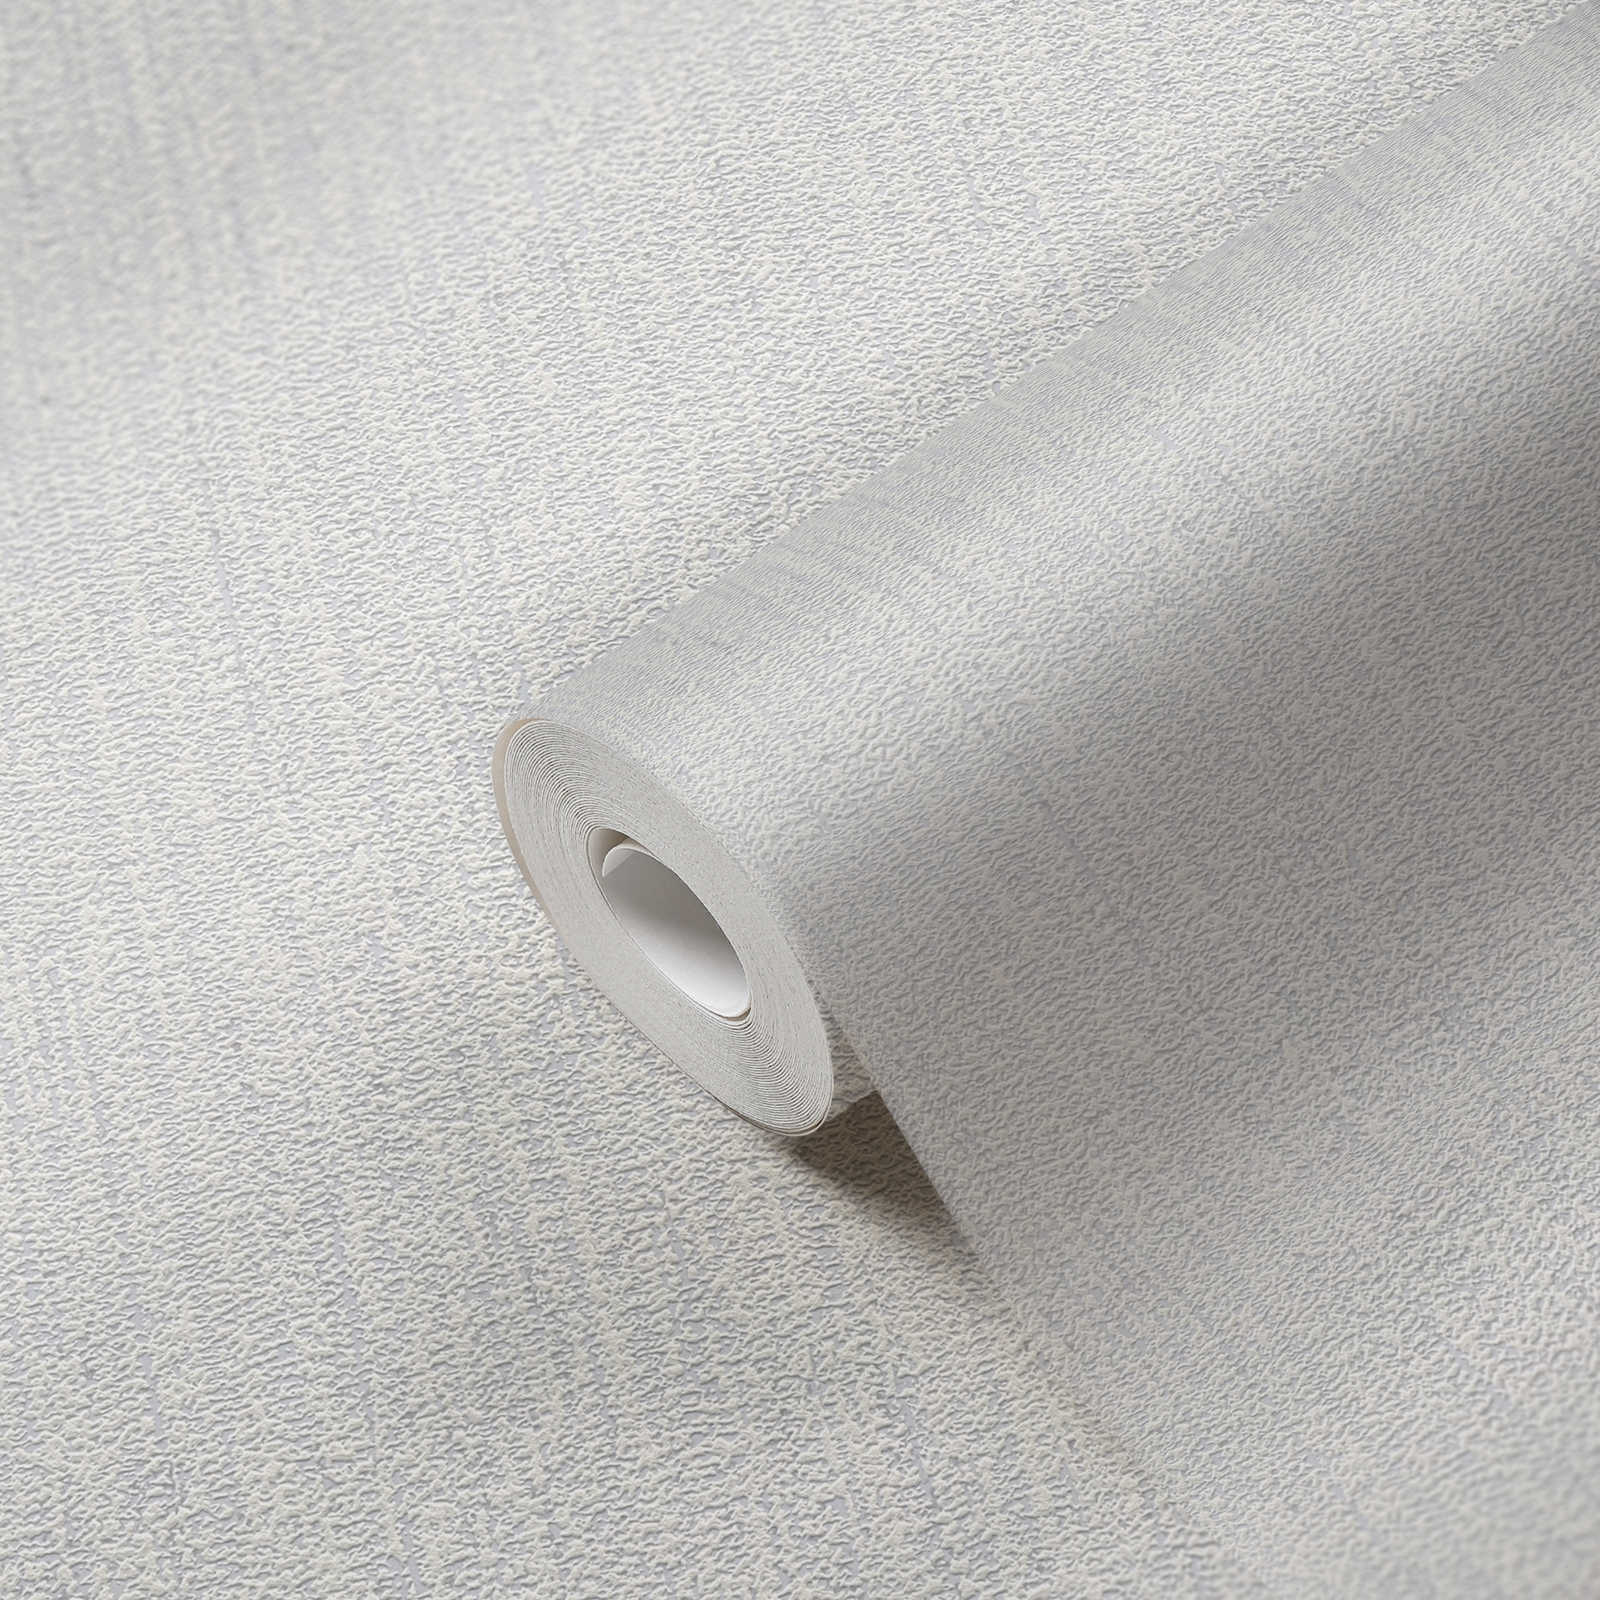             Effen behangpapier met stofstructuur - wit, lichtgrijs
        